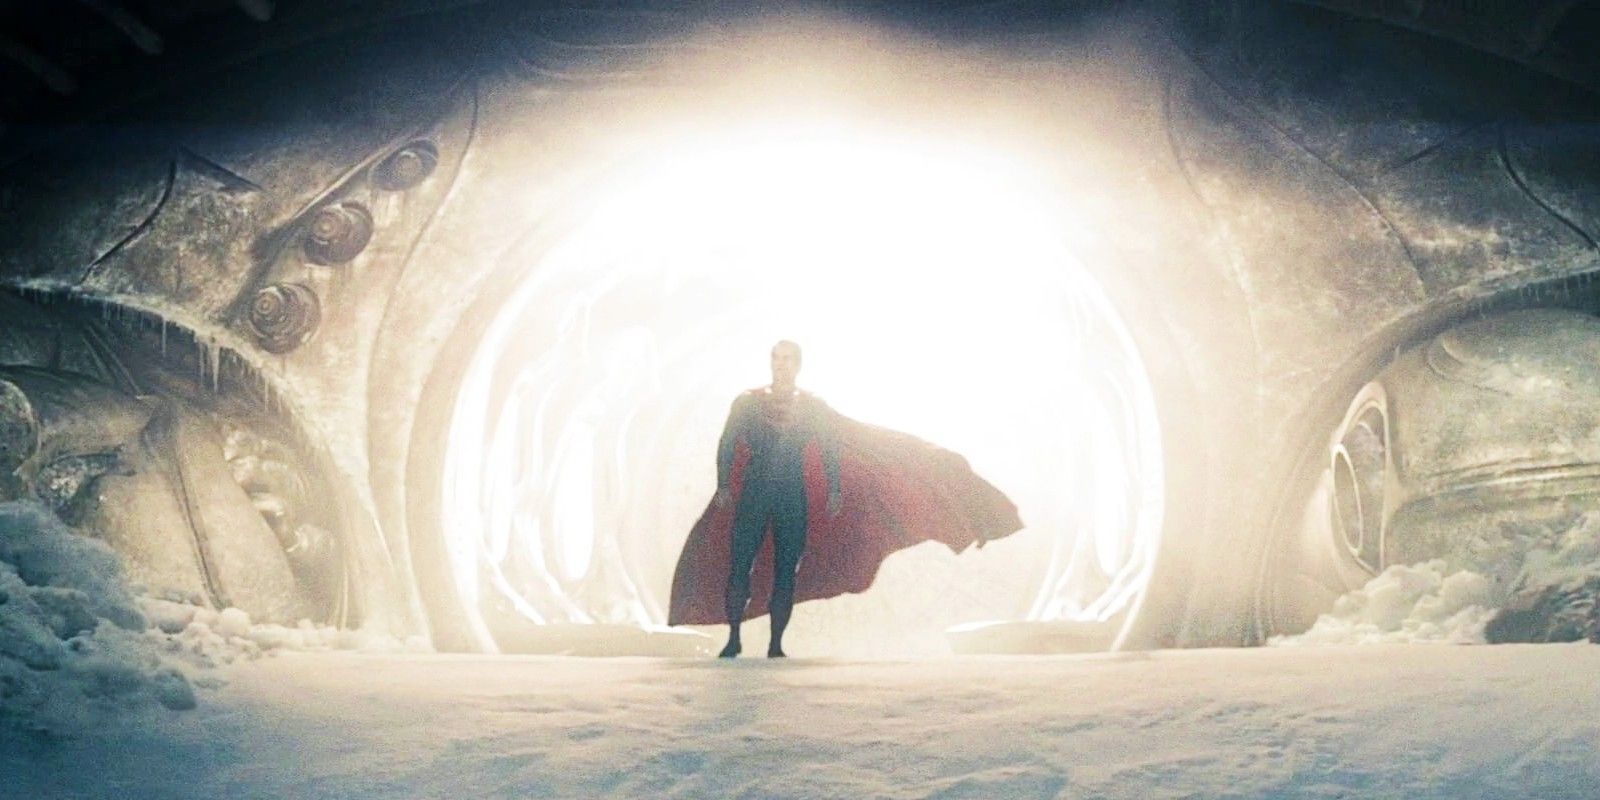 La primera foto del set de la película Superman revela un lugar de rodaje al aire libre cubierto de nieve